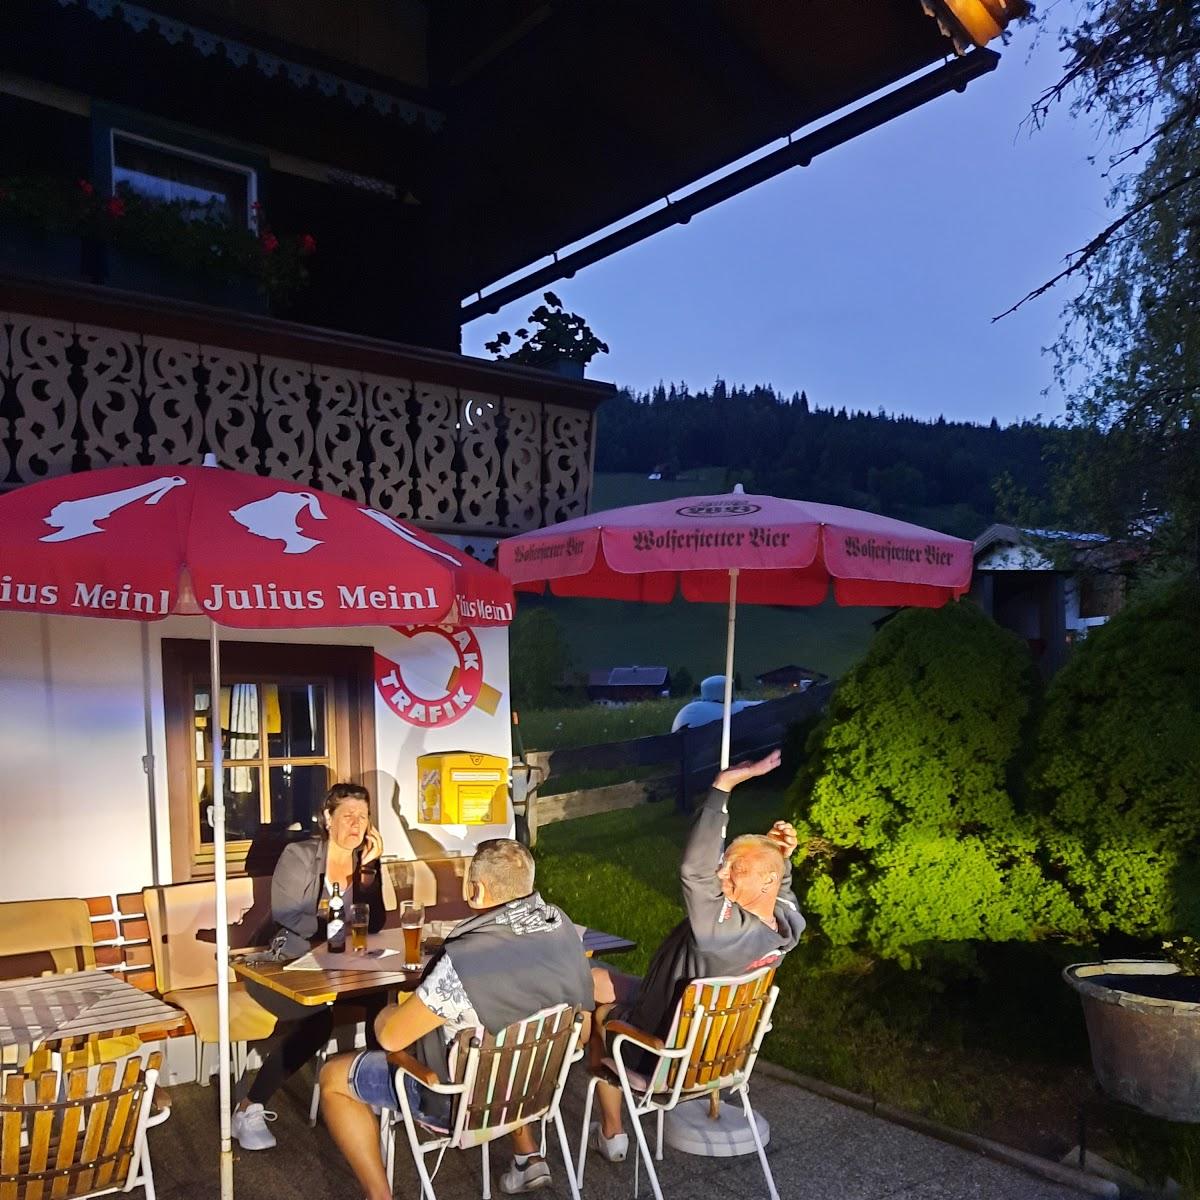 Restaurant "Gasthaus Bichlwirt" in Grafenweg